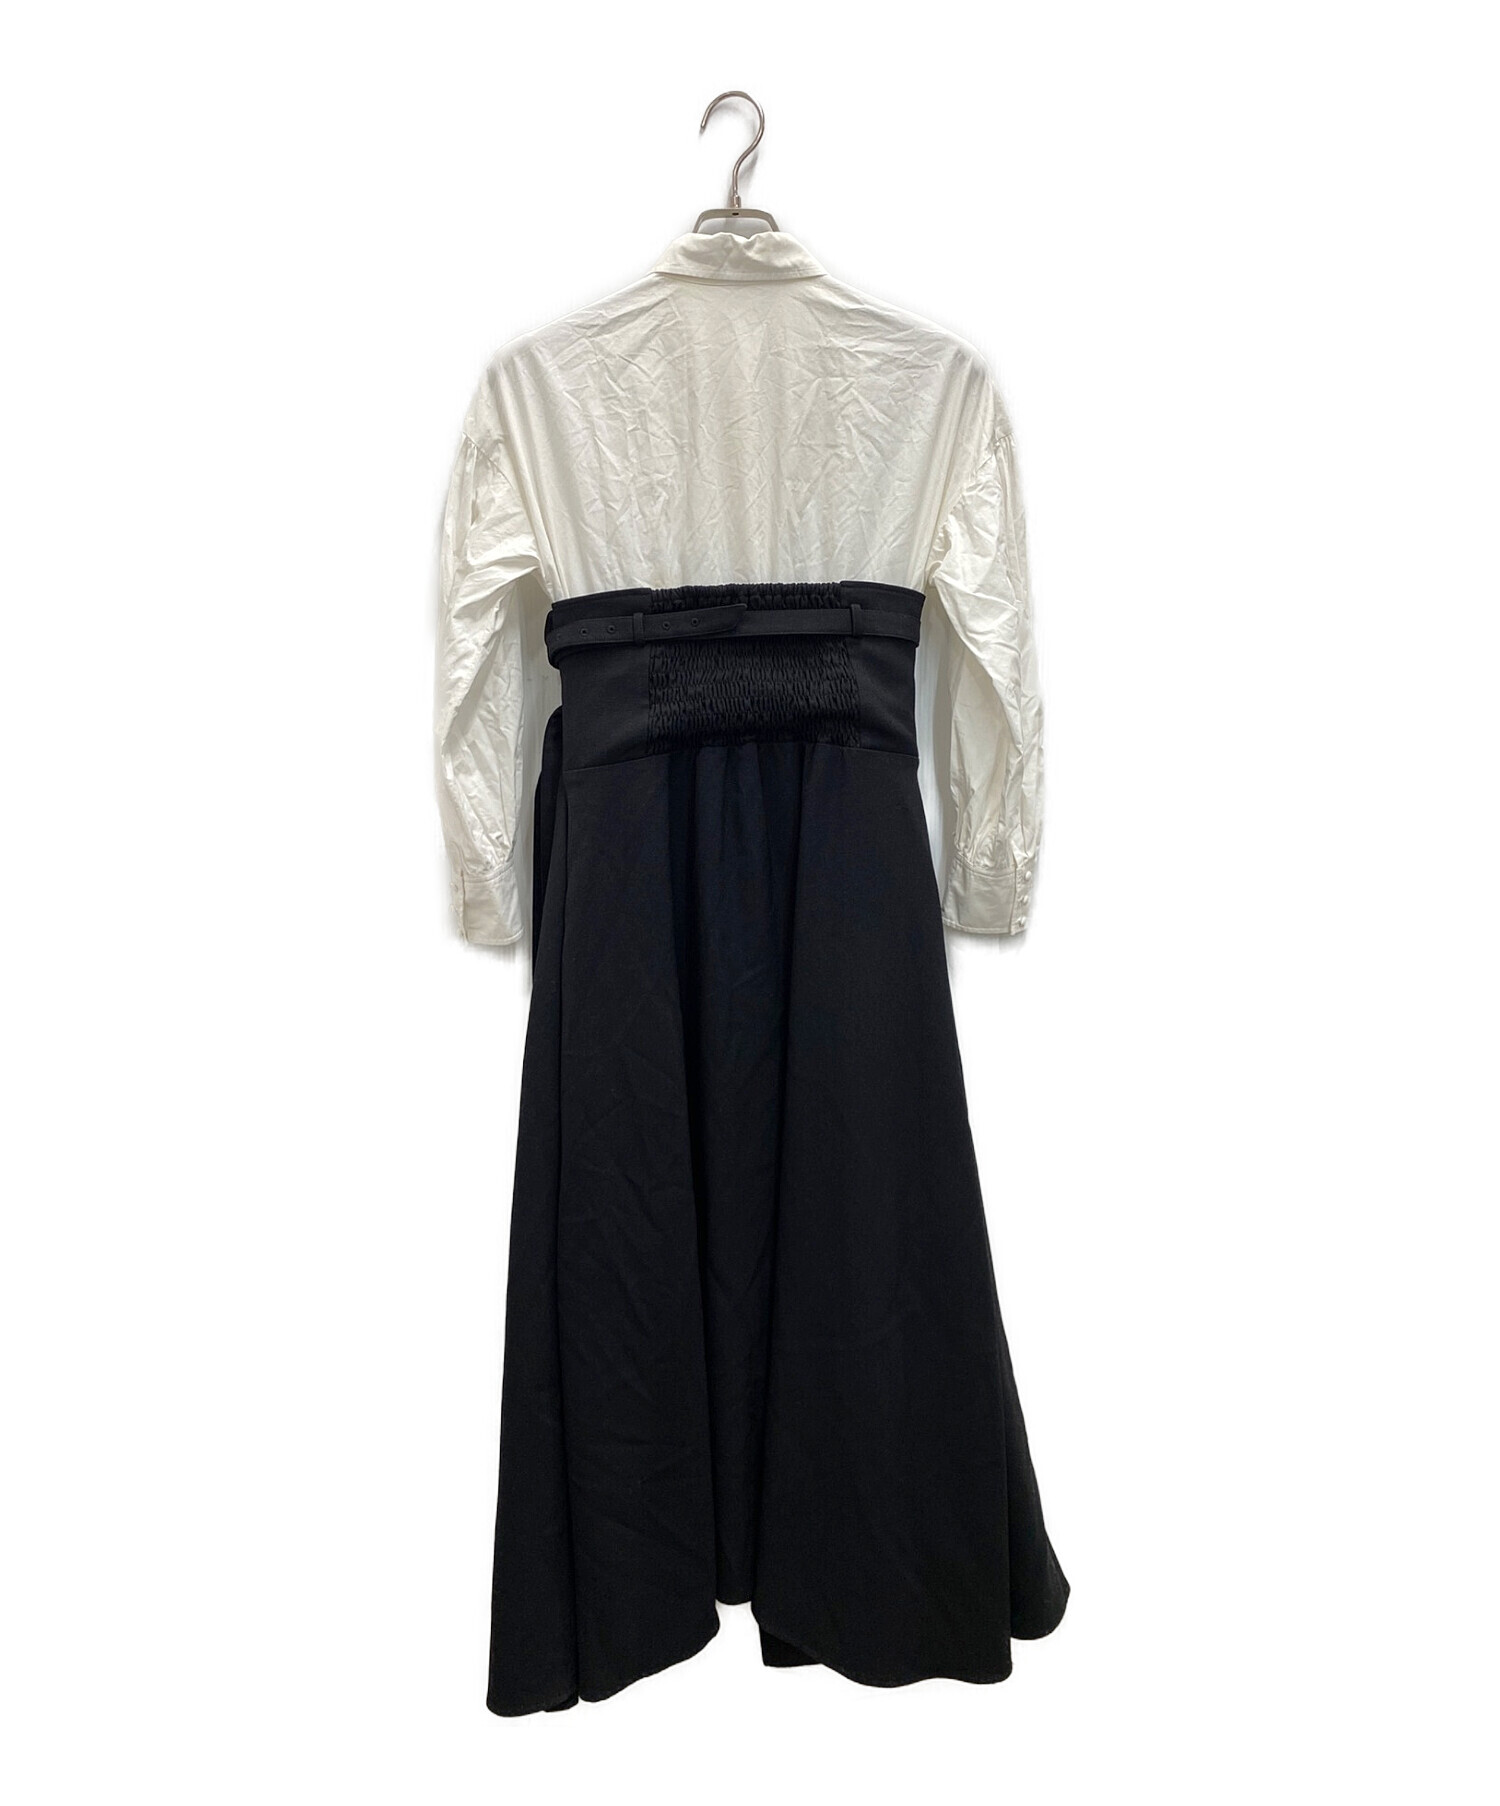 AMERI (アメリ) ミルフィーユシャツドレス ホワイト×ブラック サイズ:S